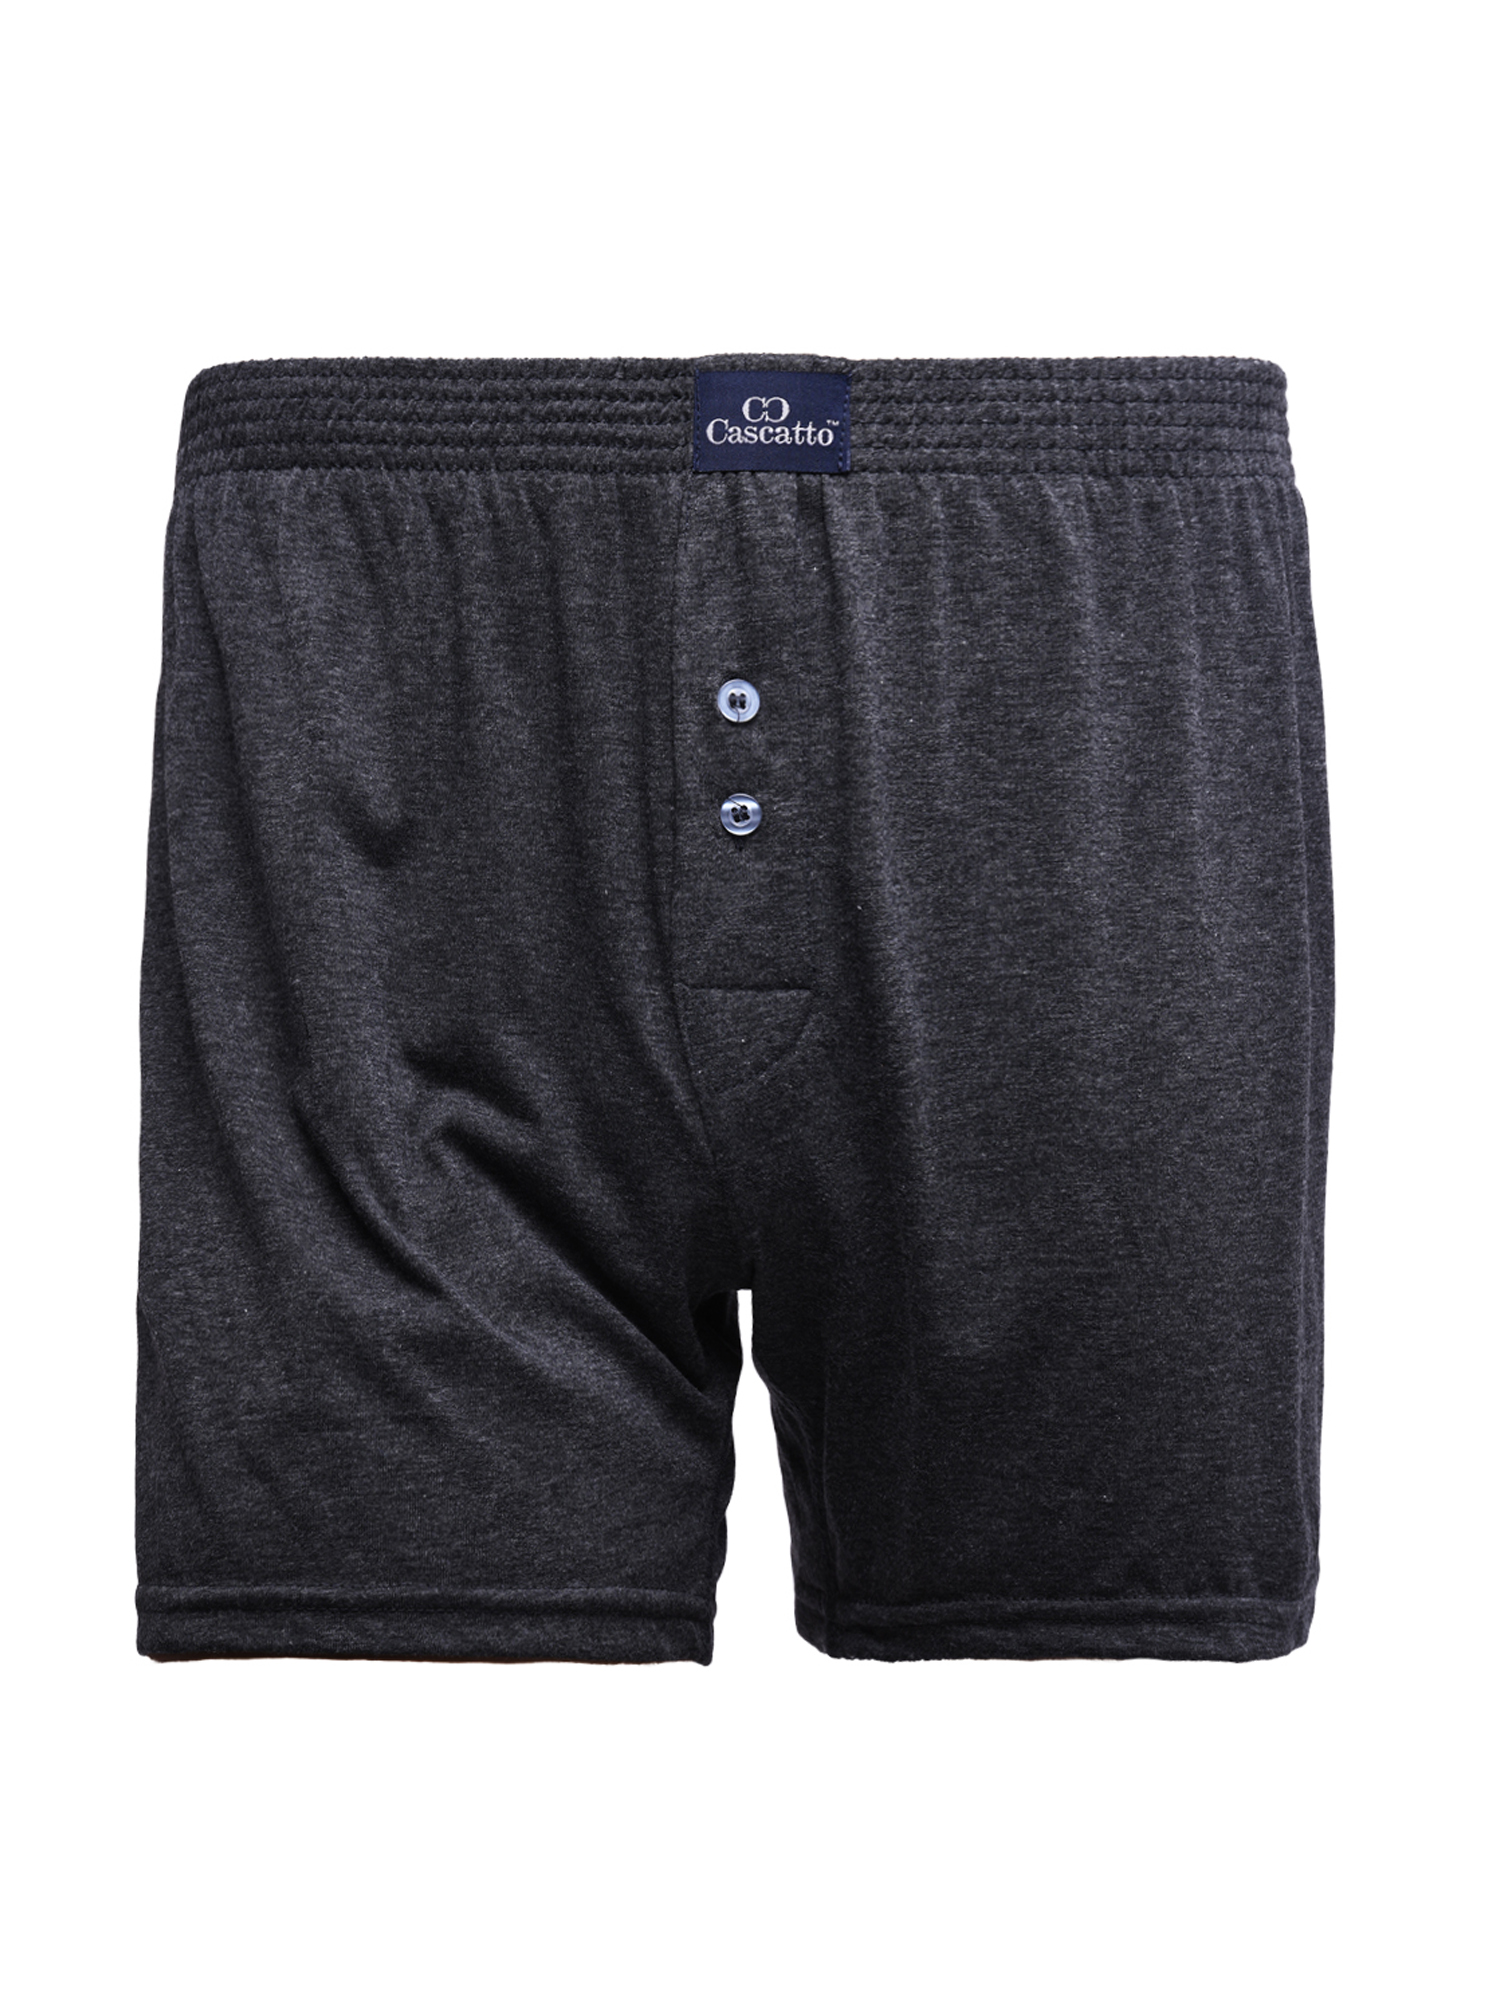 Трусы Cascatto шорты для мужчин, тёмно-серый, размер 2XL, MSH1802